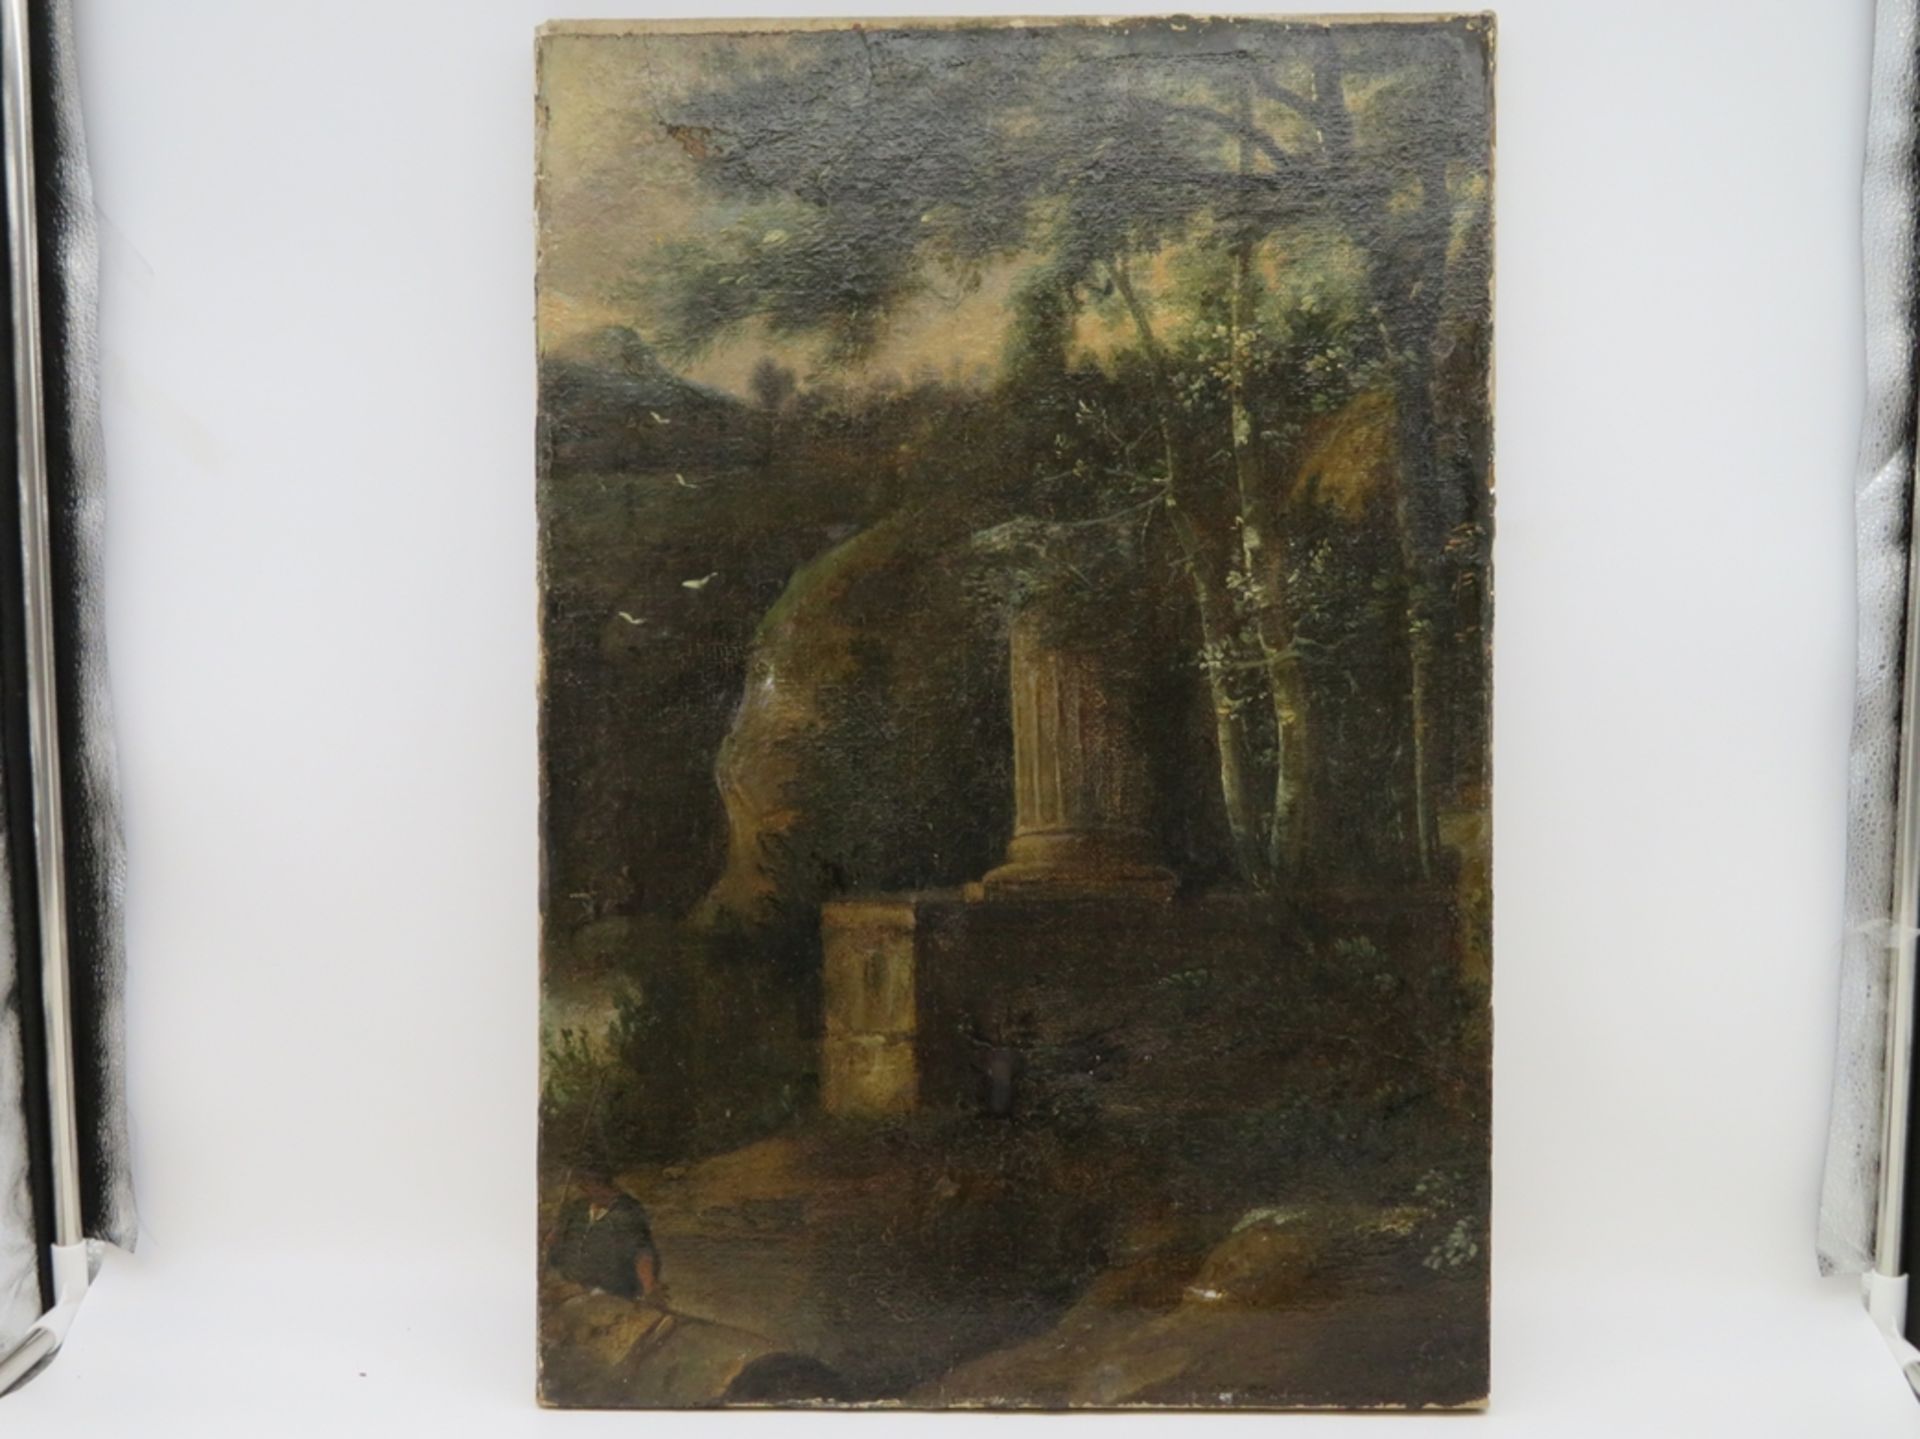 Unbekannt, 18./19. Jahrhundert, "Ruinenansicht", Öl/Leinwand, doubliert, 57 x 40 cm, o.R.